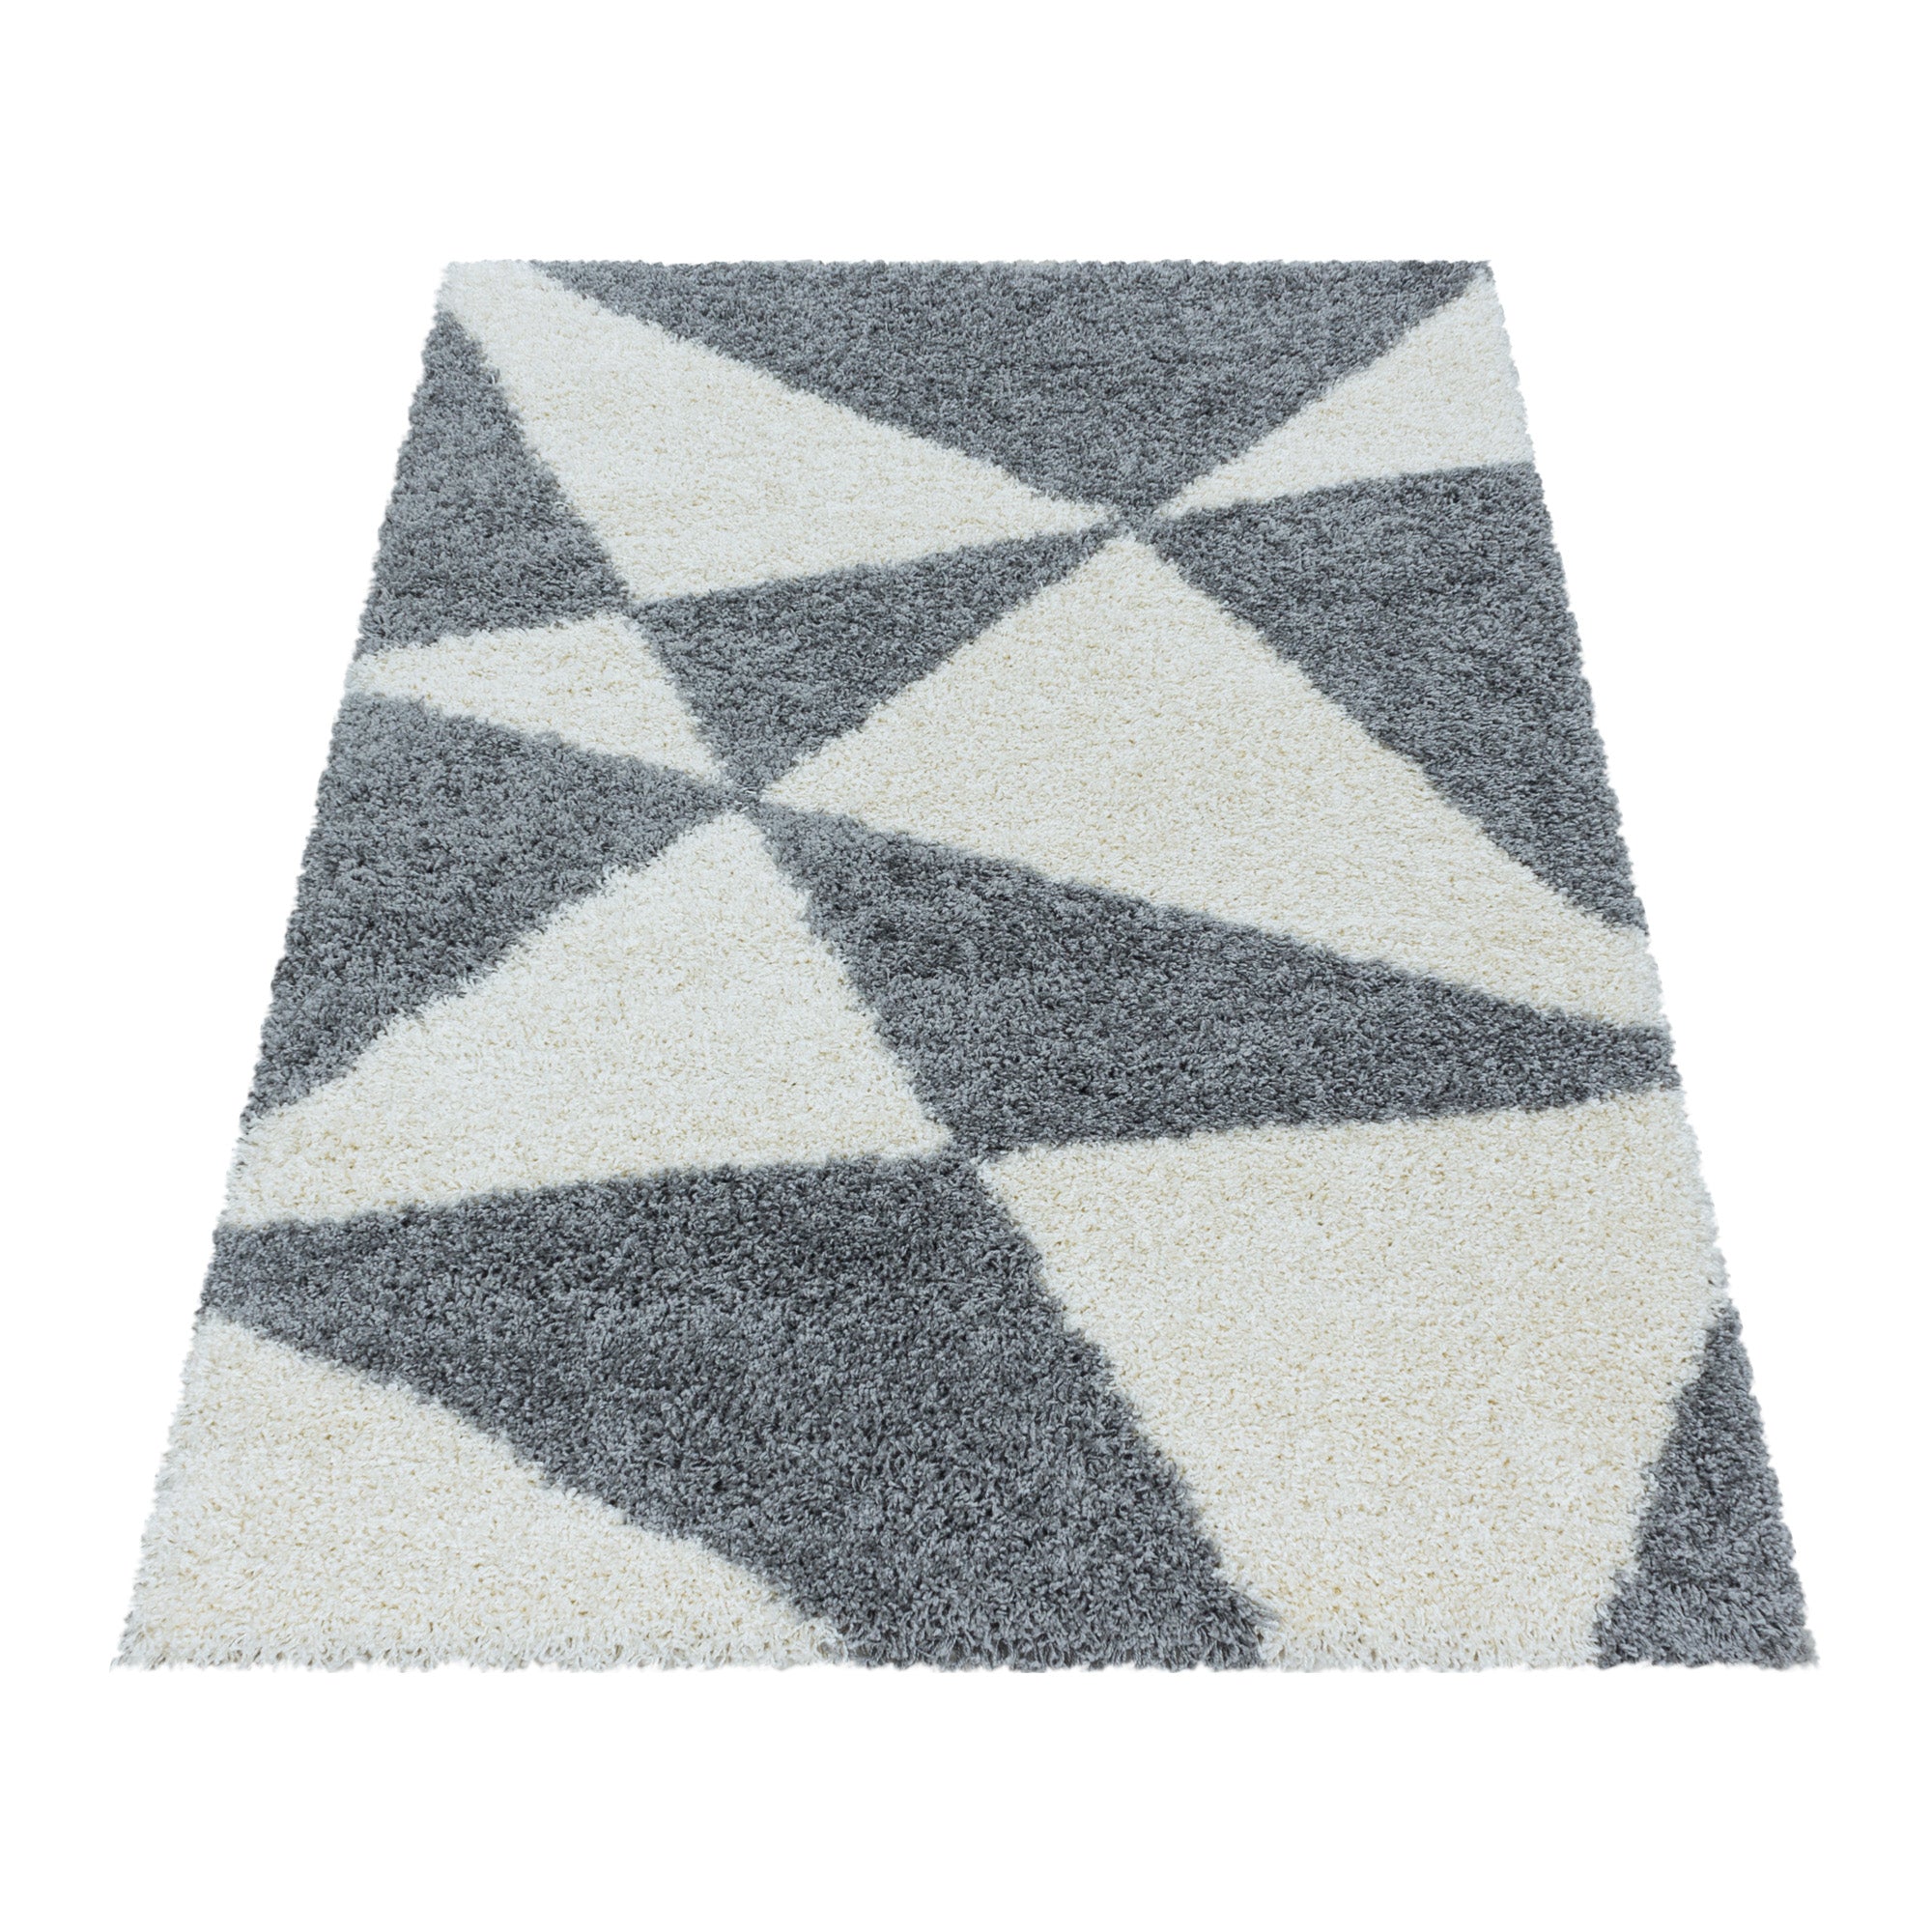 Design Hochflor Teppich Wohnzimmerteppich Muster Abstrakte Dreiecke Grau